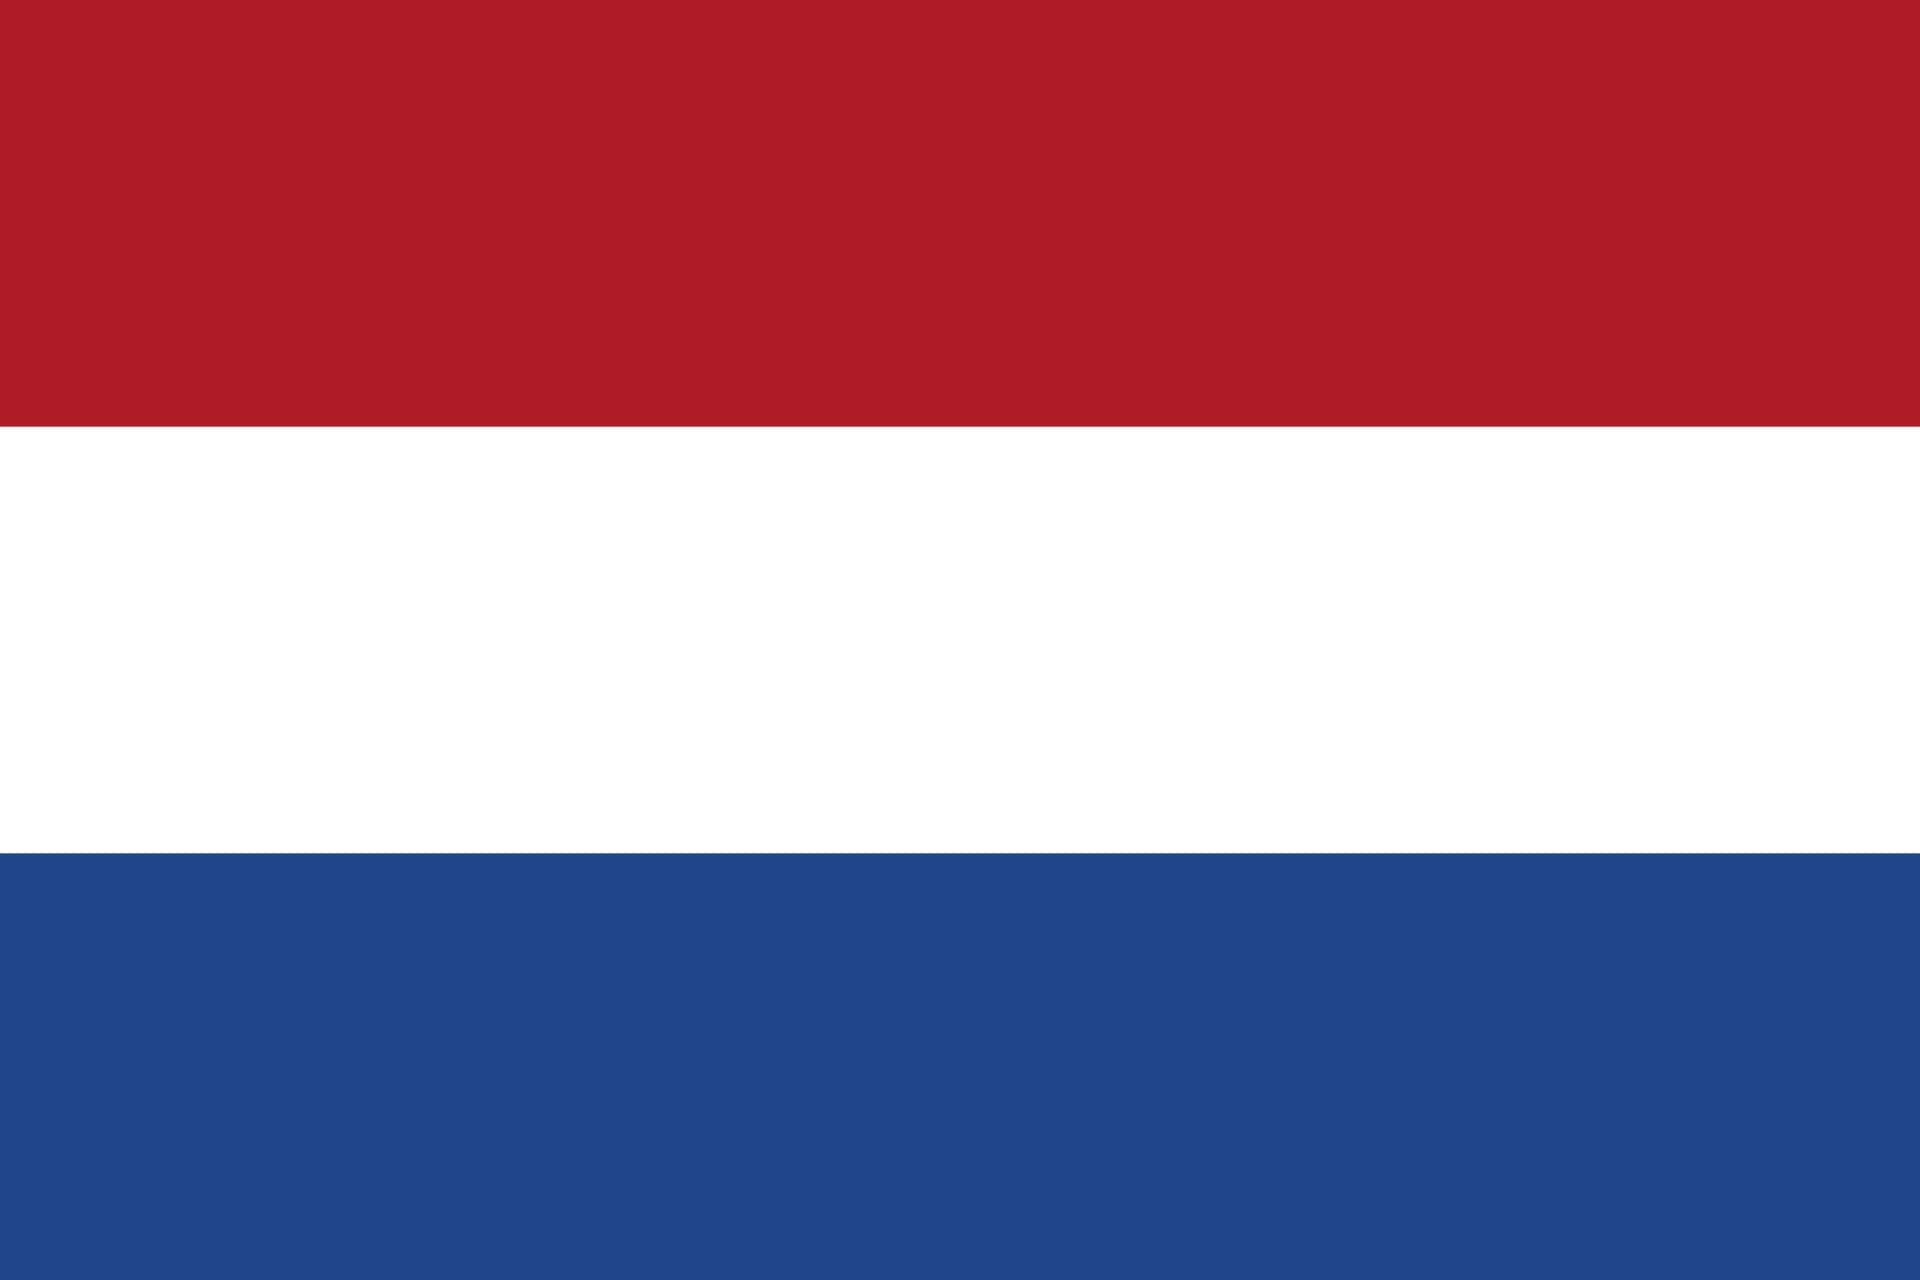 オランダ国旗の色の意味とは？